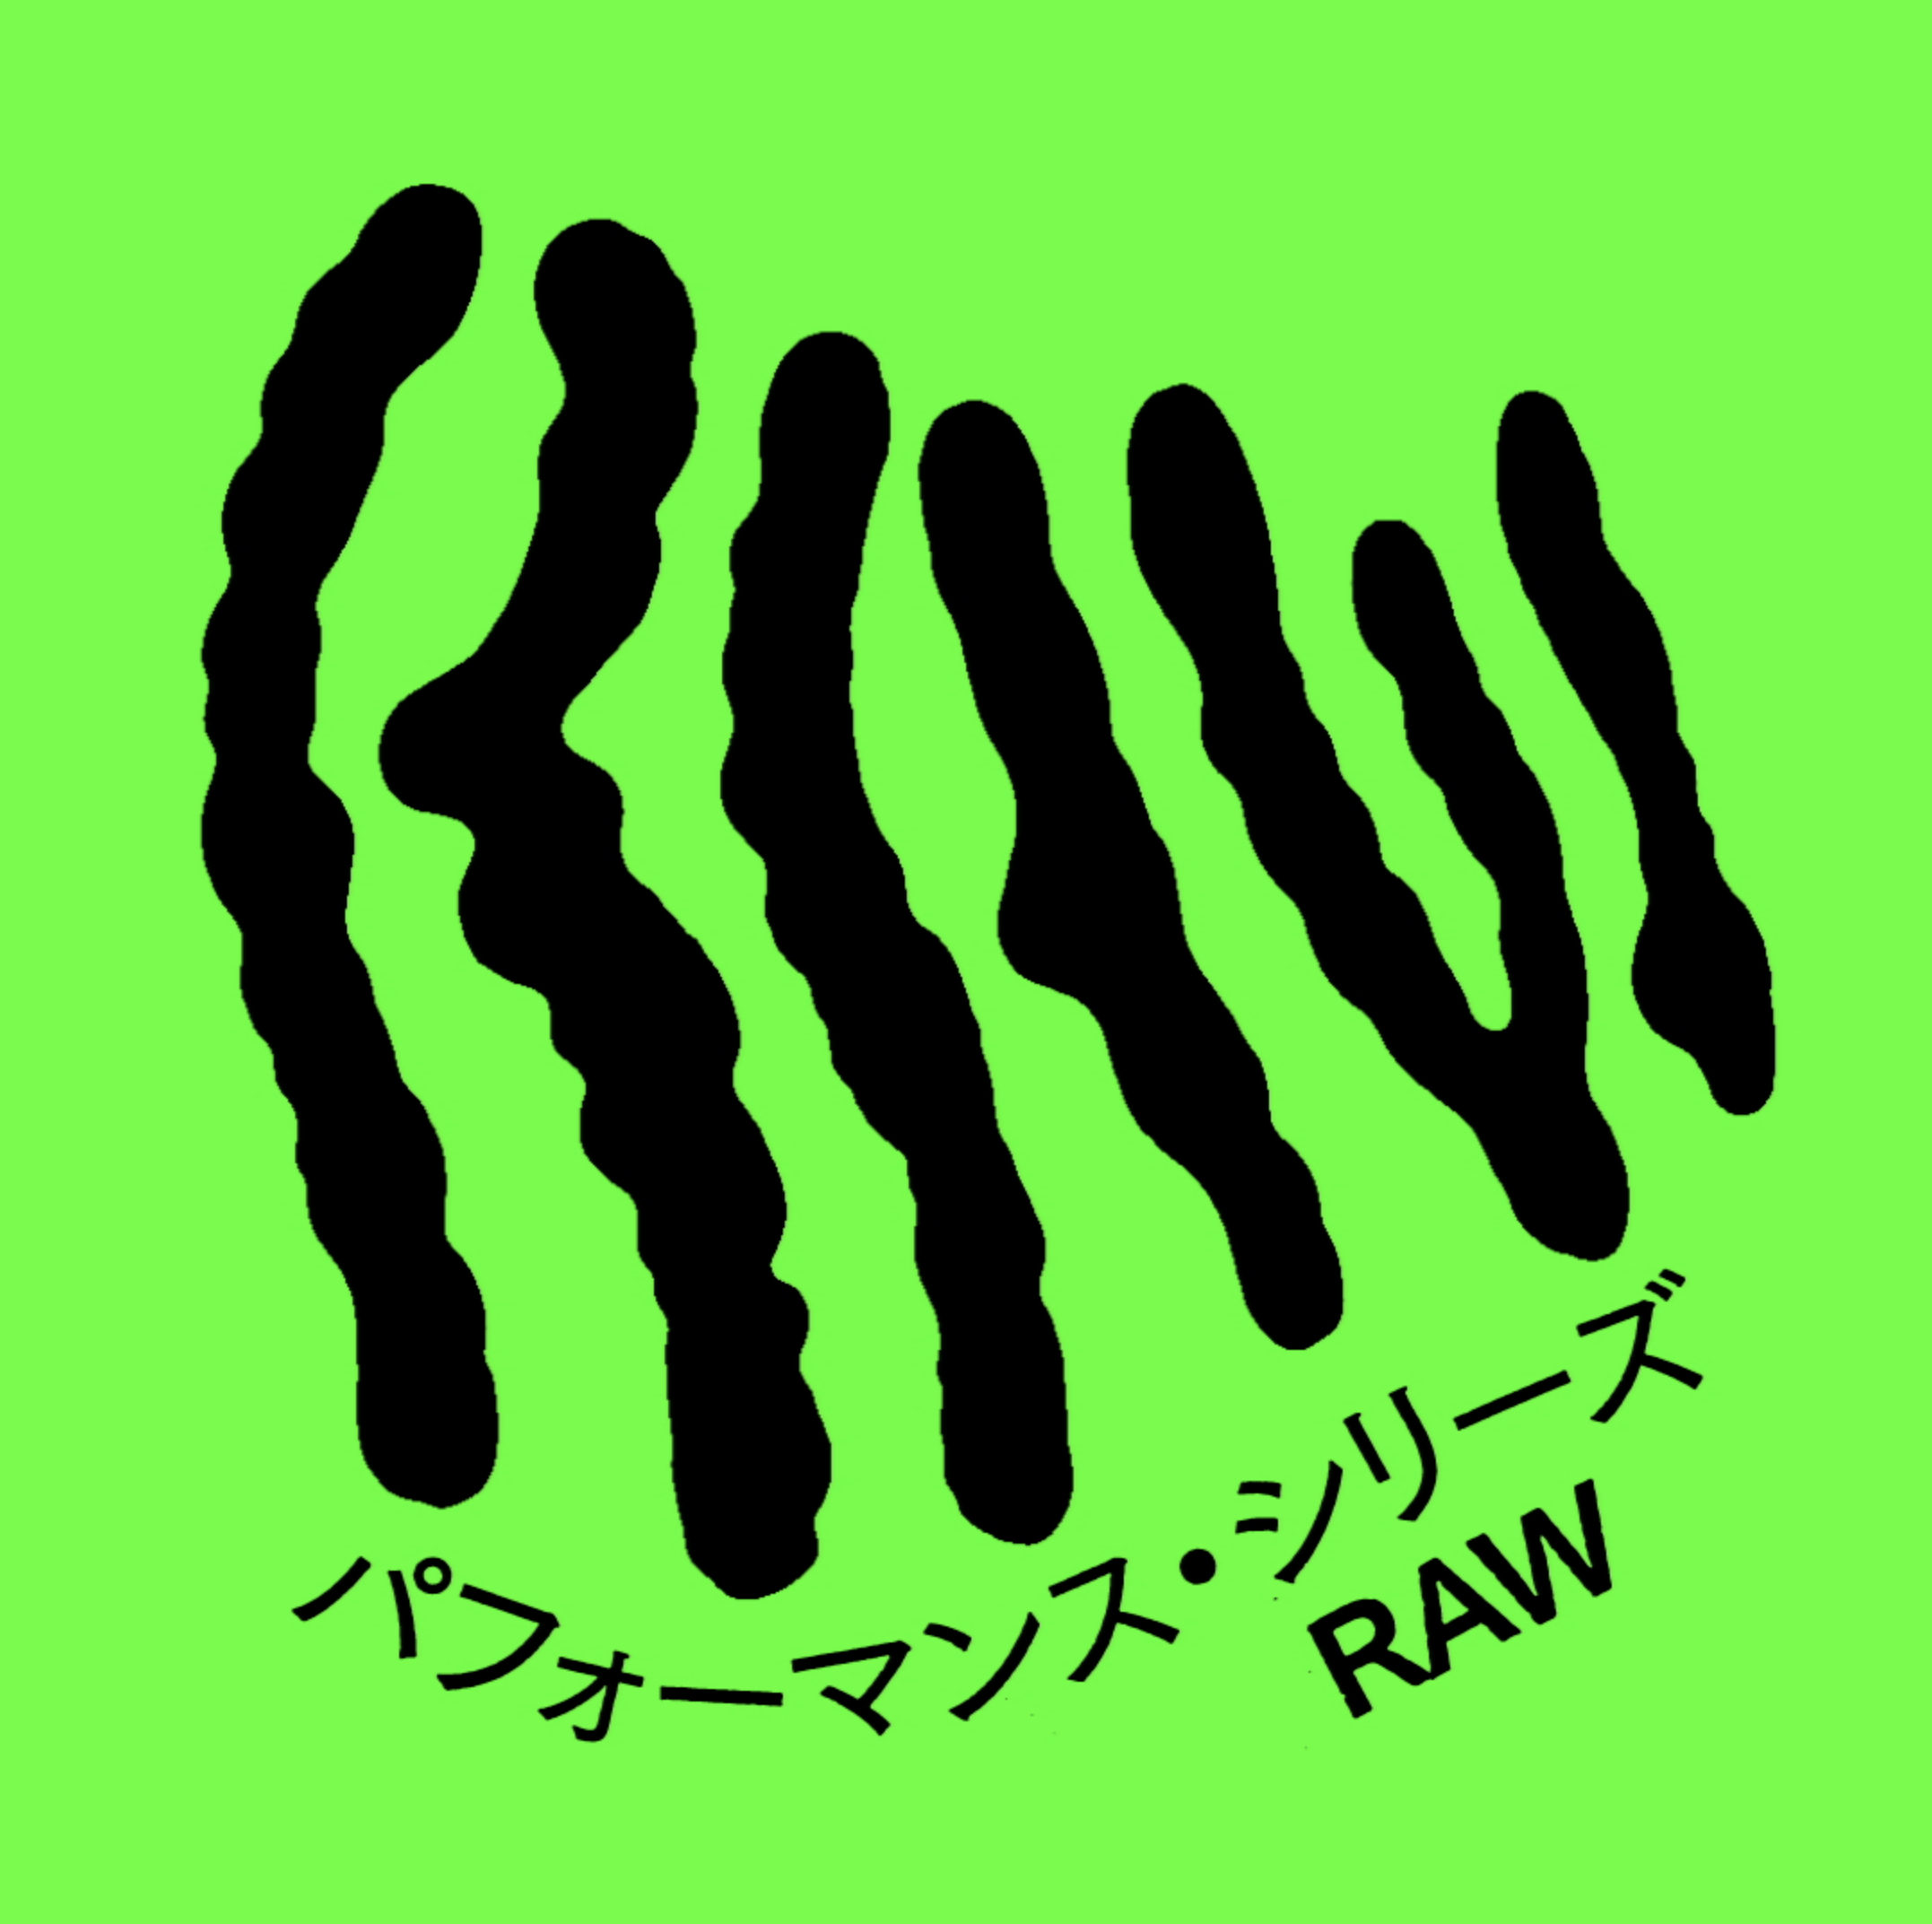 パフォーマンス・シリーズ「RAW」02<b>【配信中】</b>